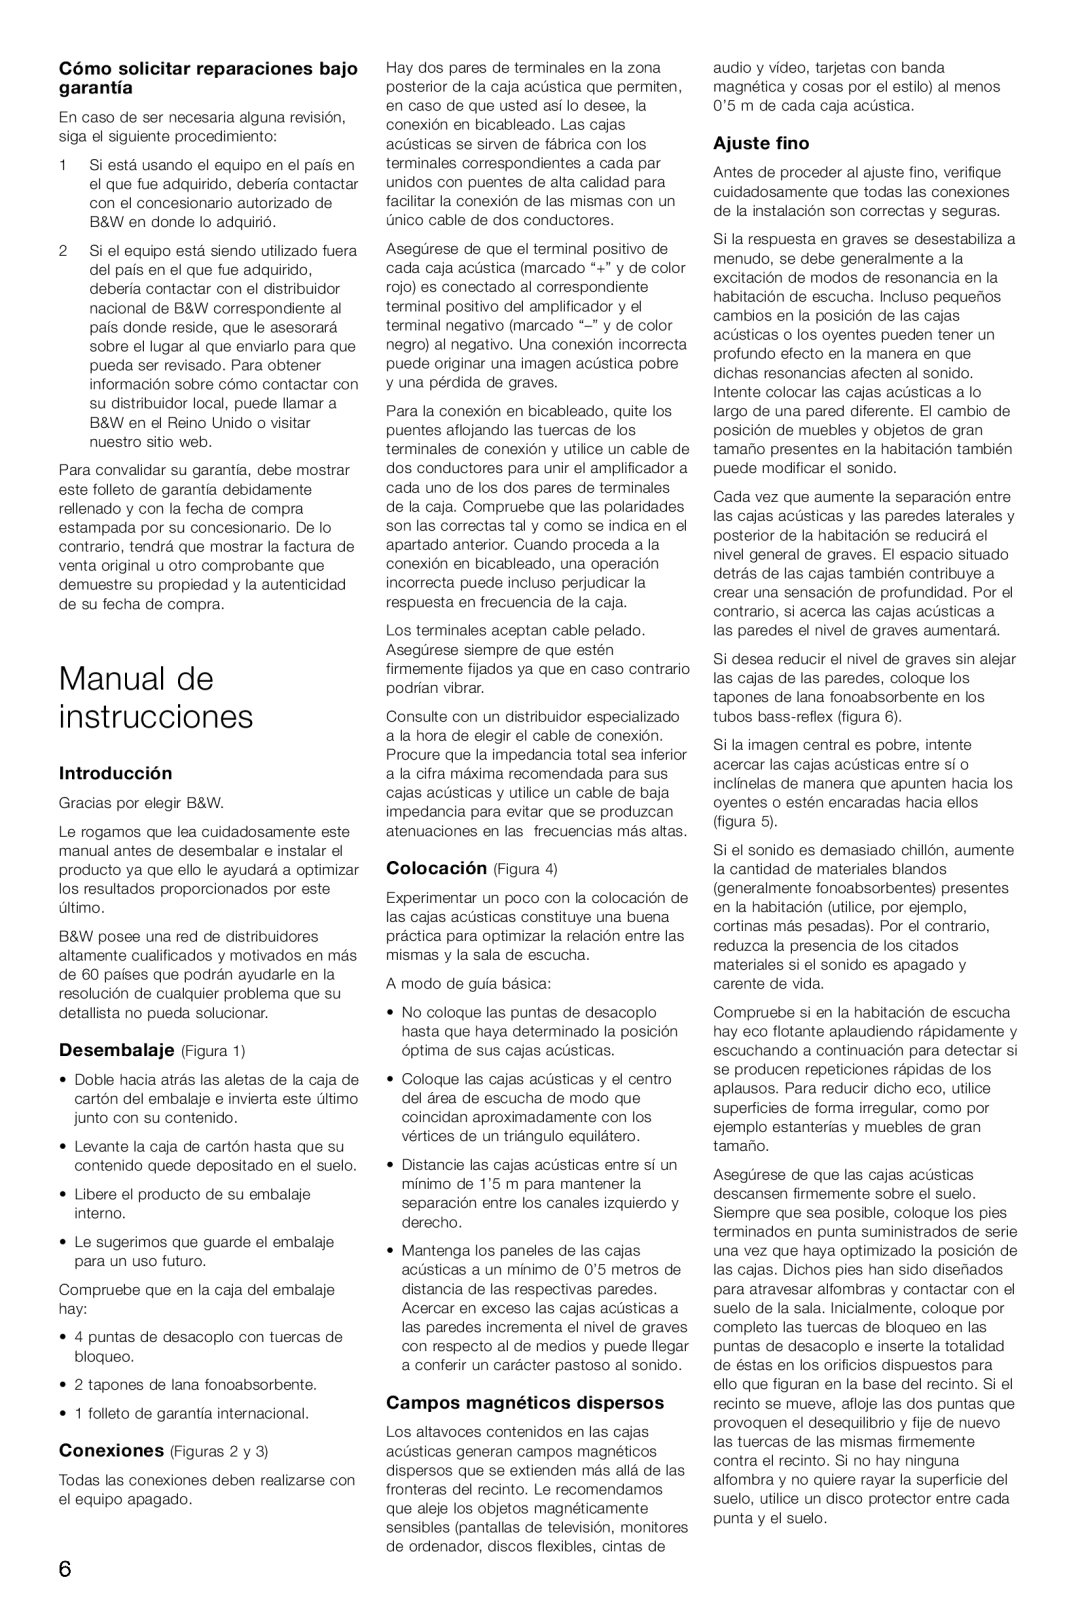 Bowers & Wilkins CM4 Manual de instrucciones, Cómo solicitar reparaciones bajo garantía, Introducción, Desembalaje Figura 